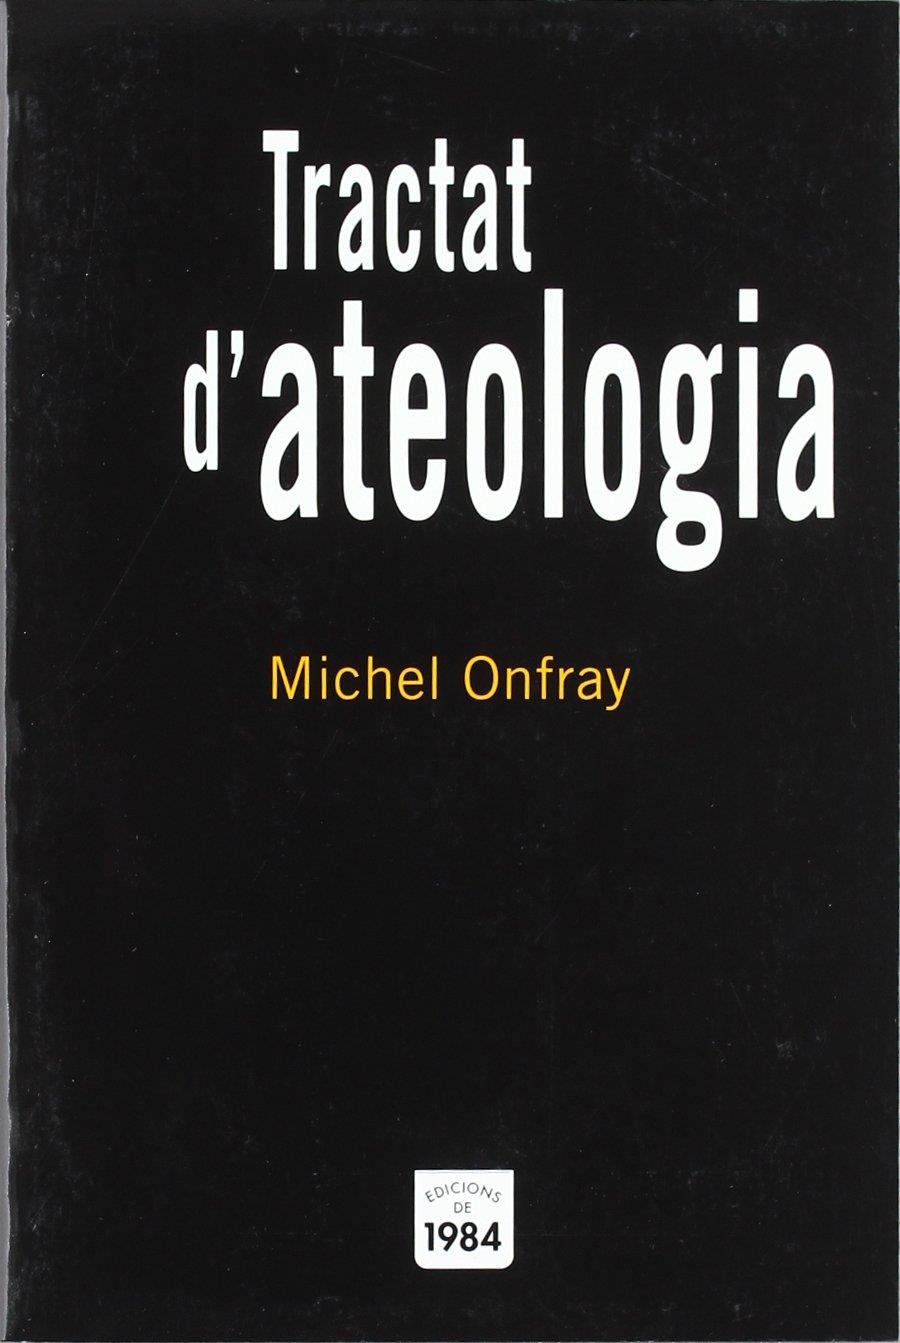 Tractat d'ateologia | Onfray, Michel | Cooperativa autogestionària